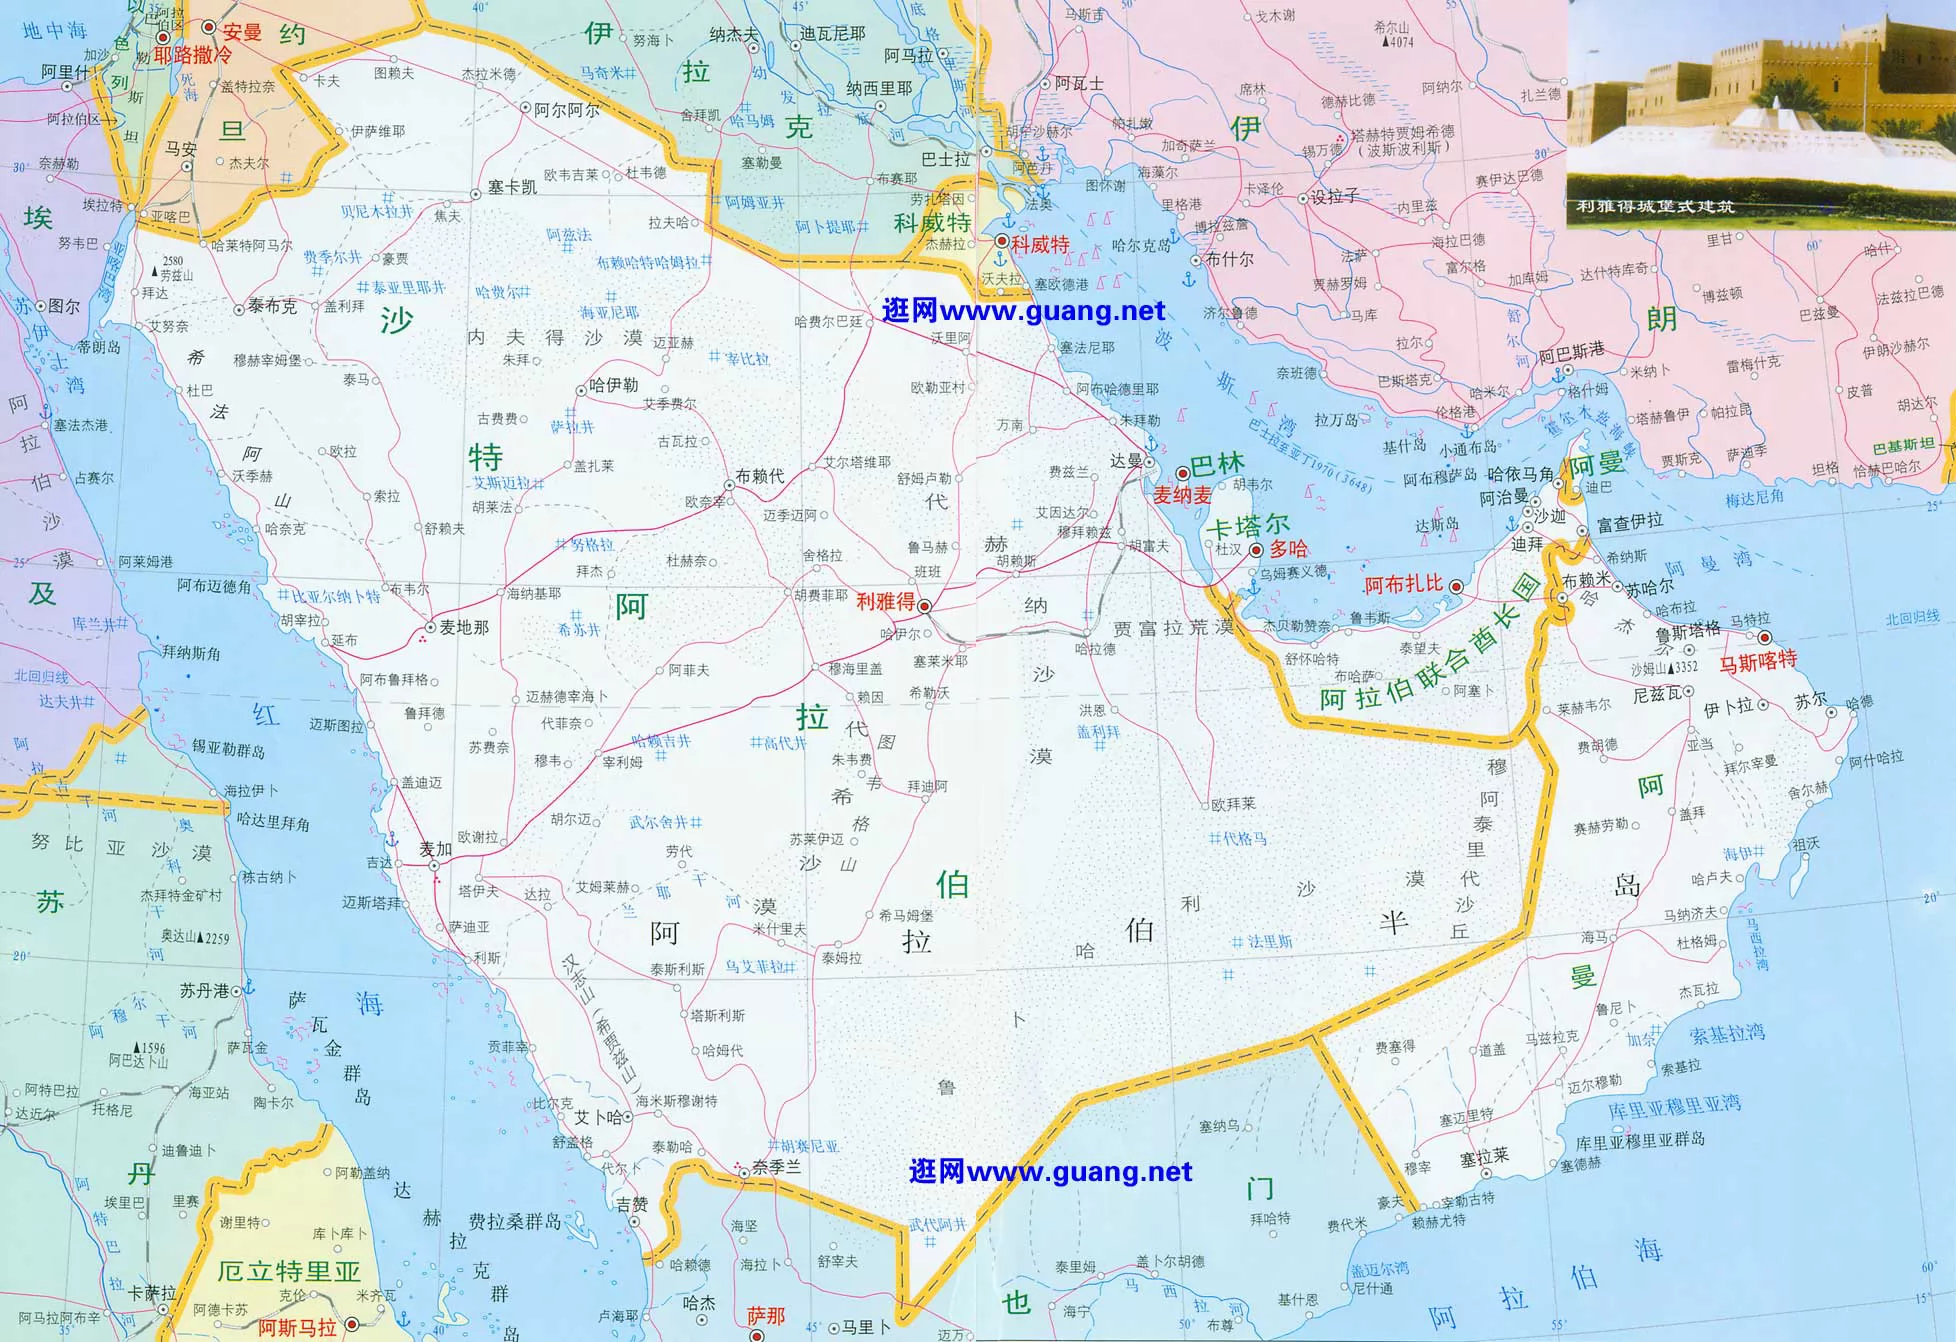 中东地图_巴勒斯坦地区地图 - 世界地理地图 - 地理教师网